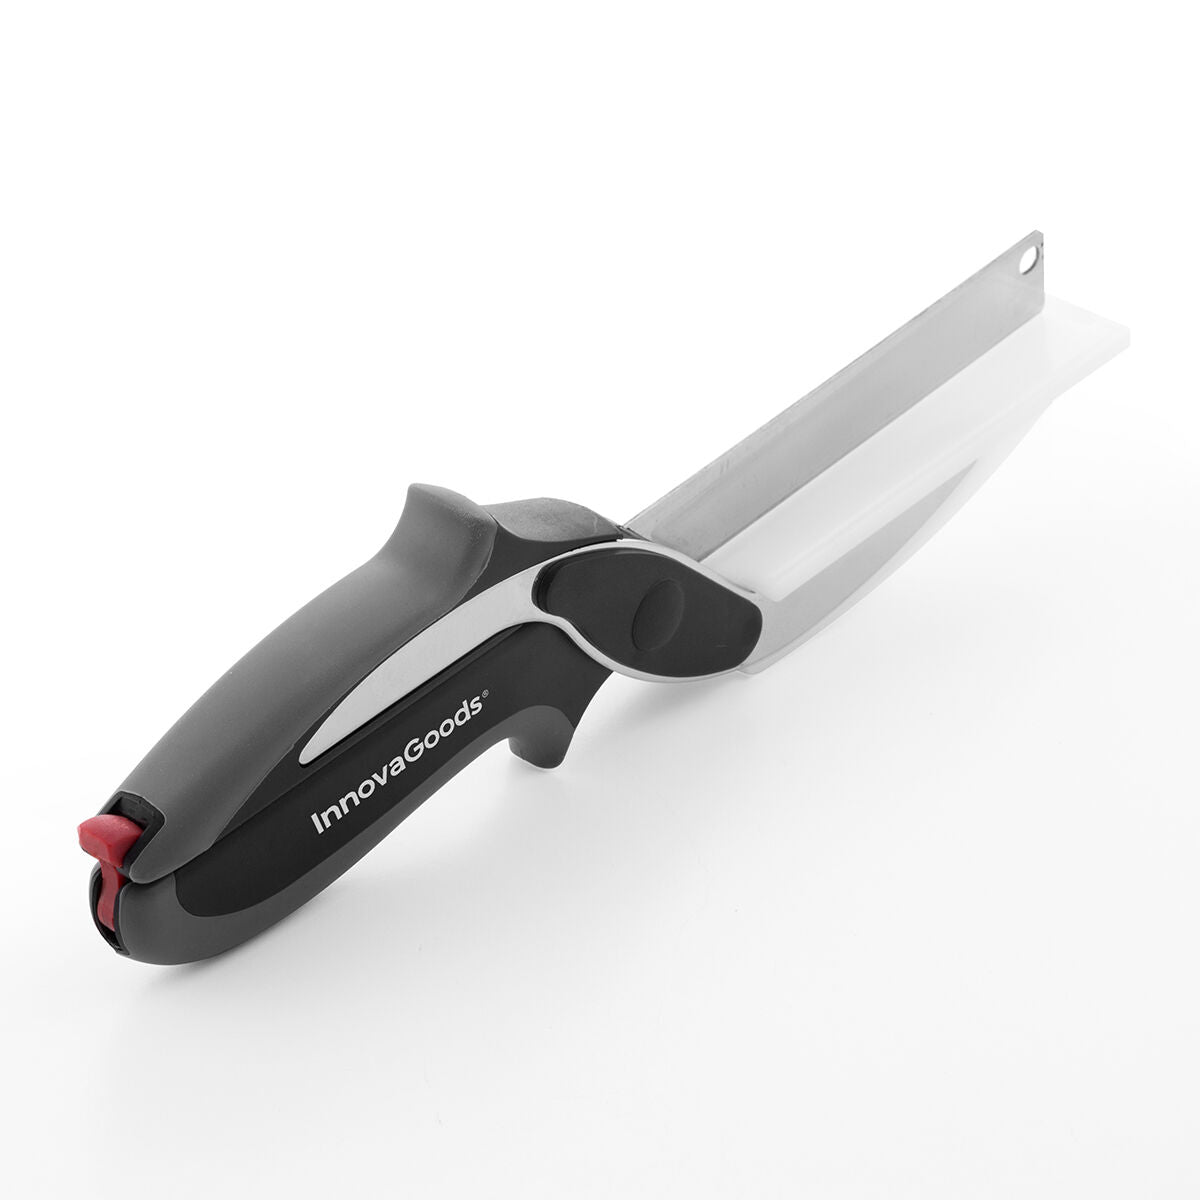 Nóż nożycowy i zintegrowana mini deska do krojenia 